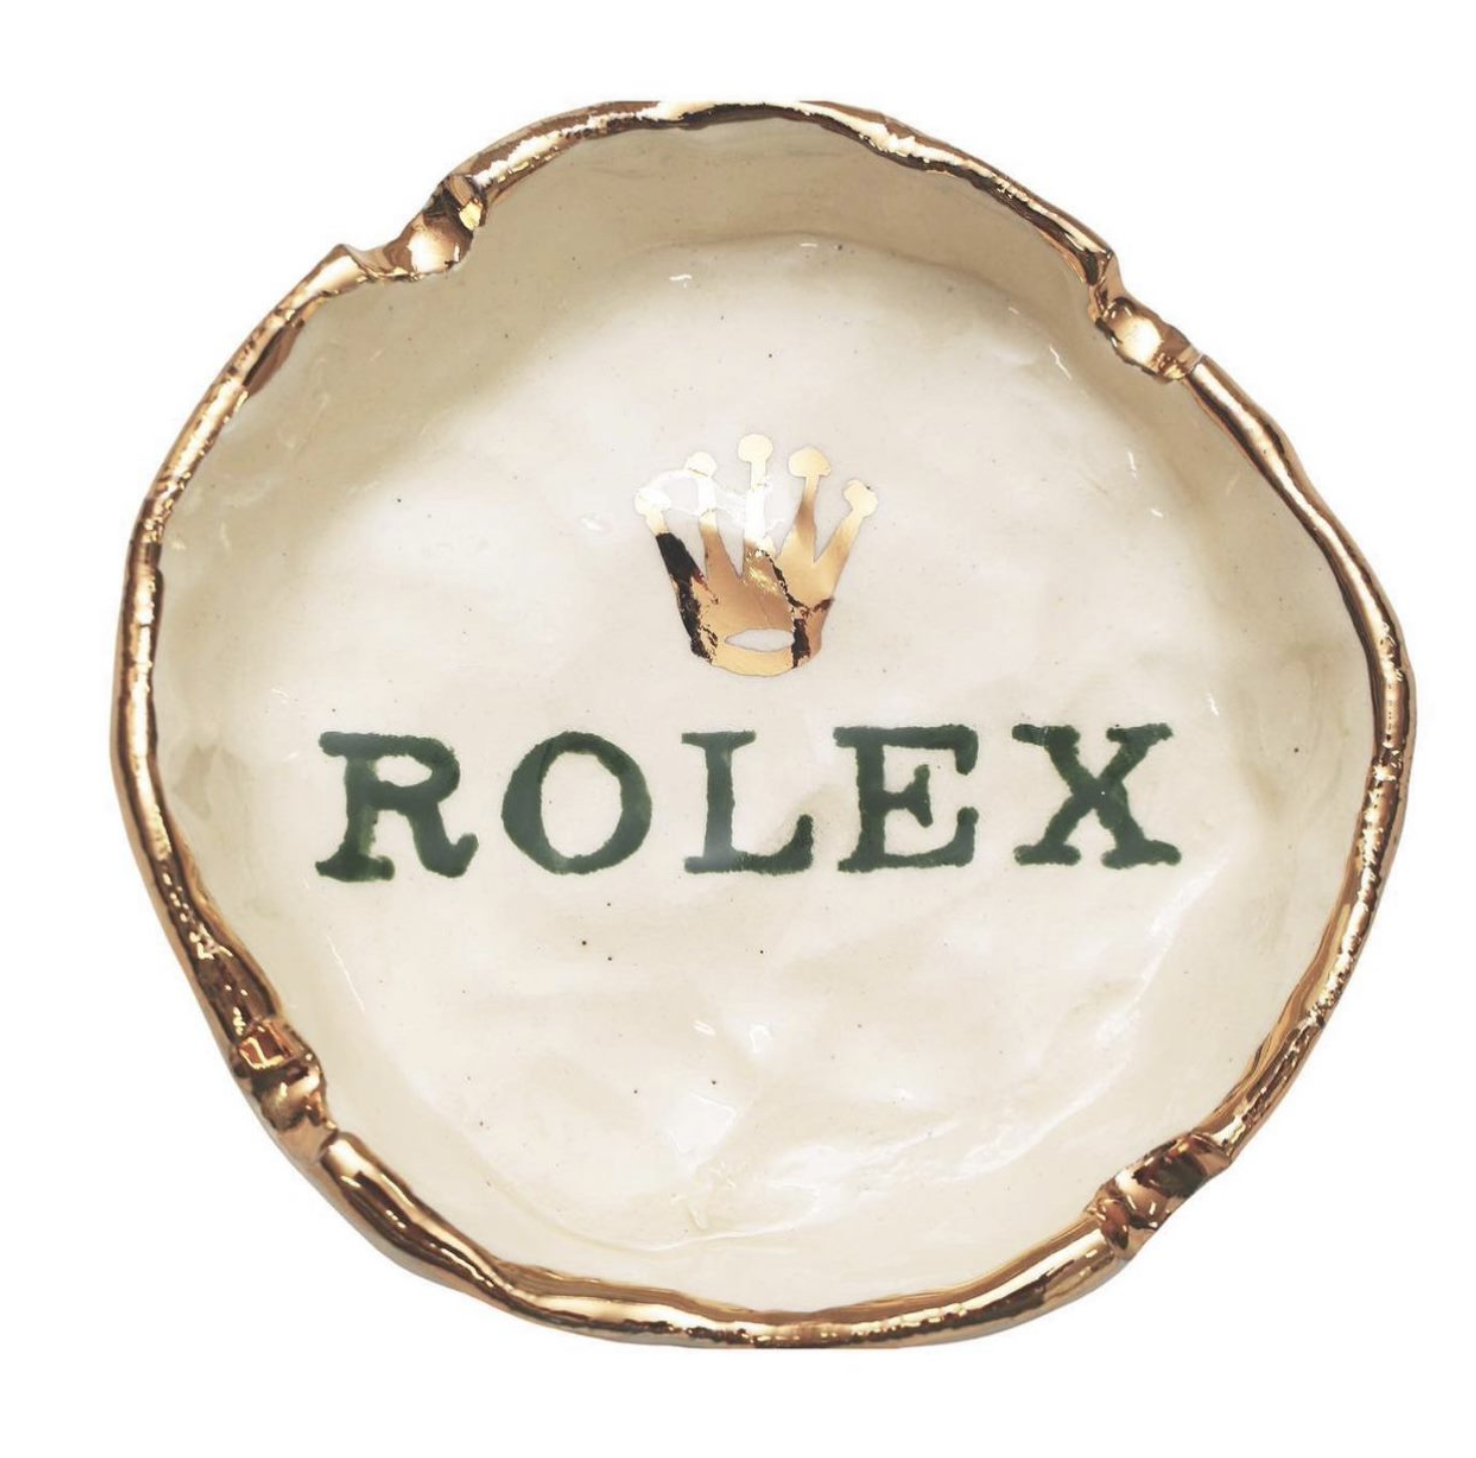 Rolex Ashtray